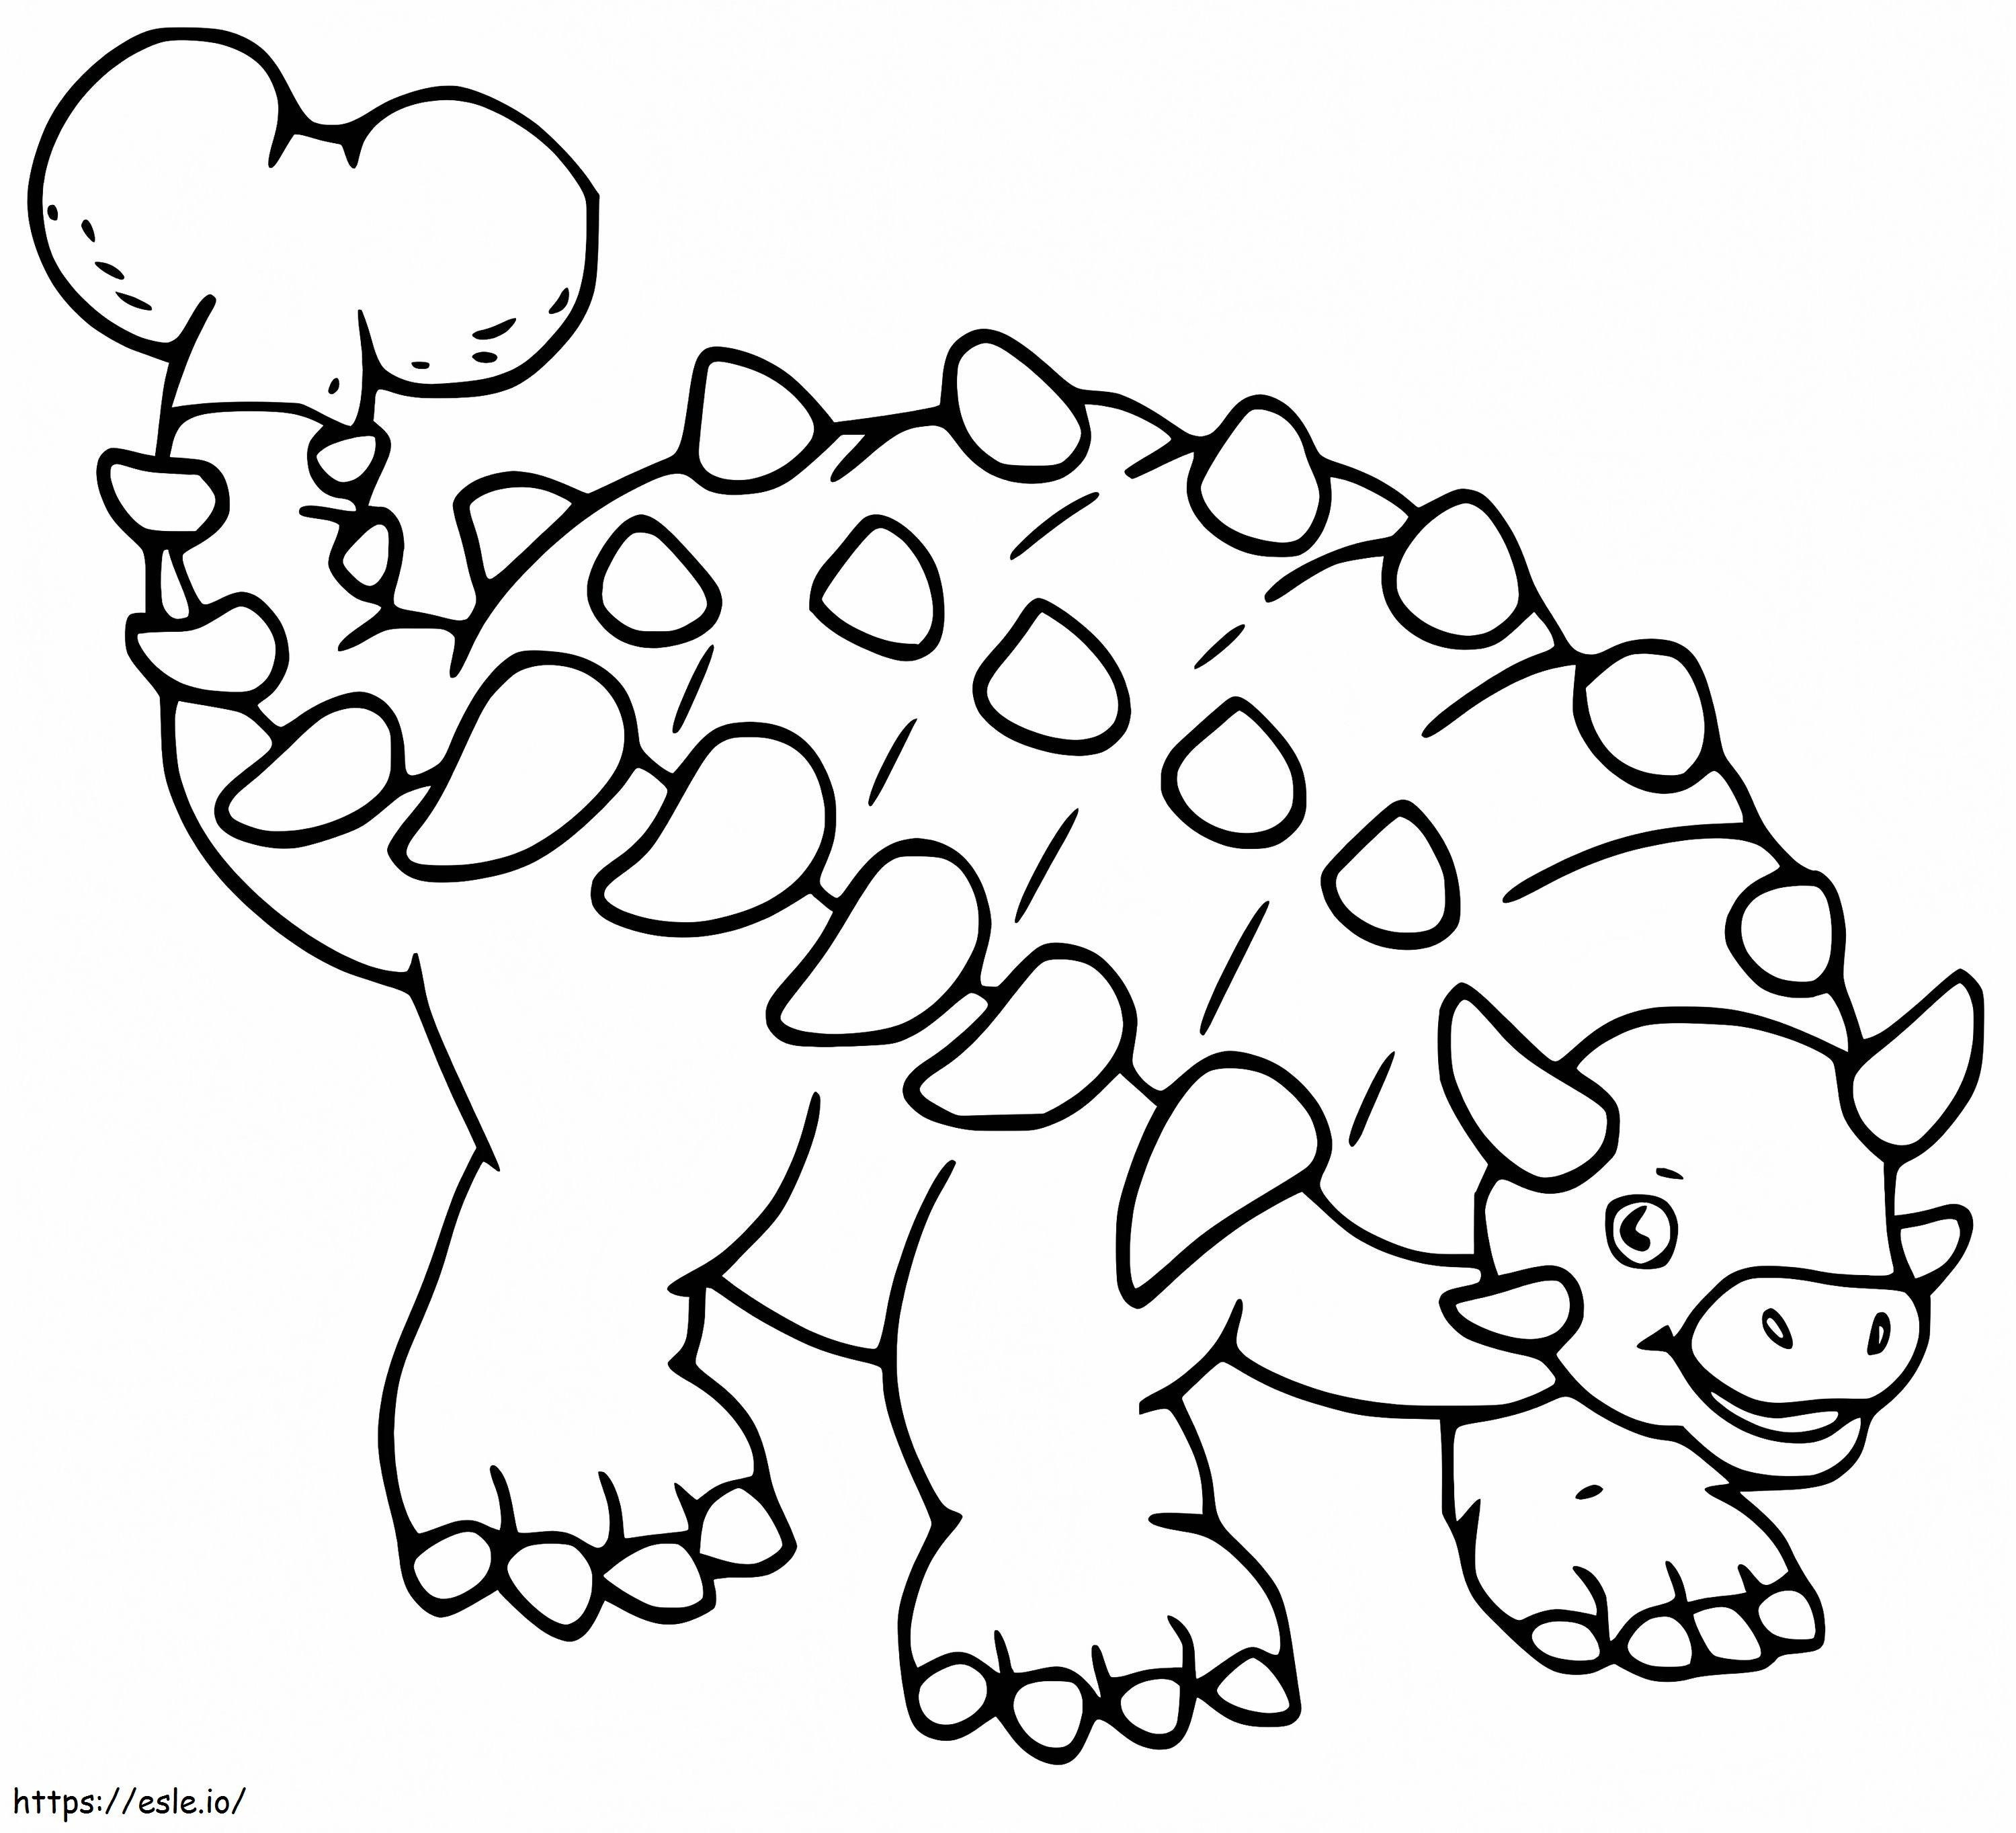 Sevimli Ankylosaurus boyama